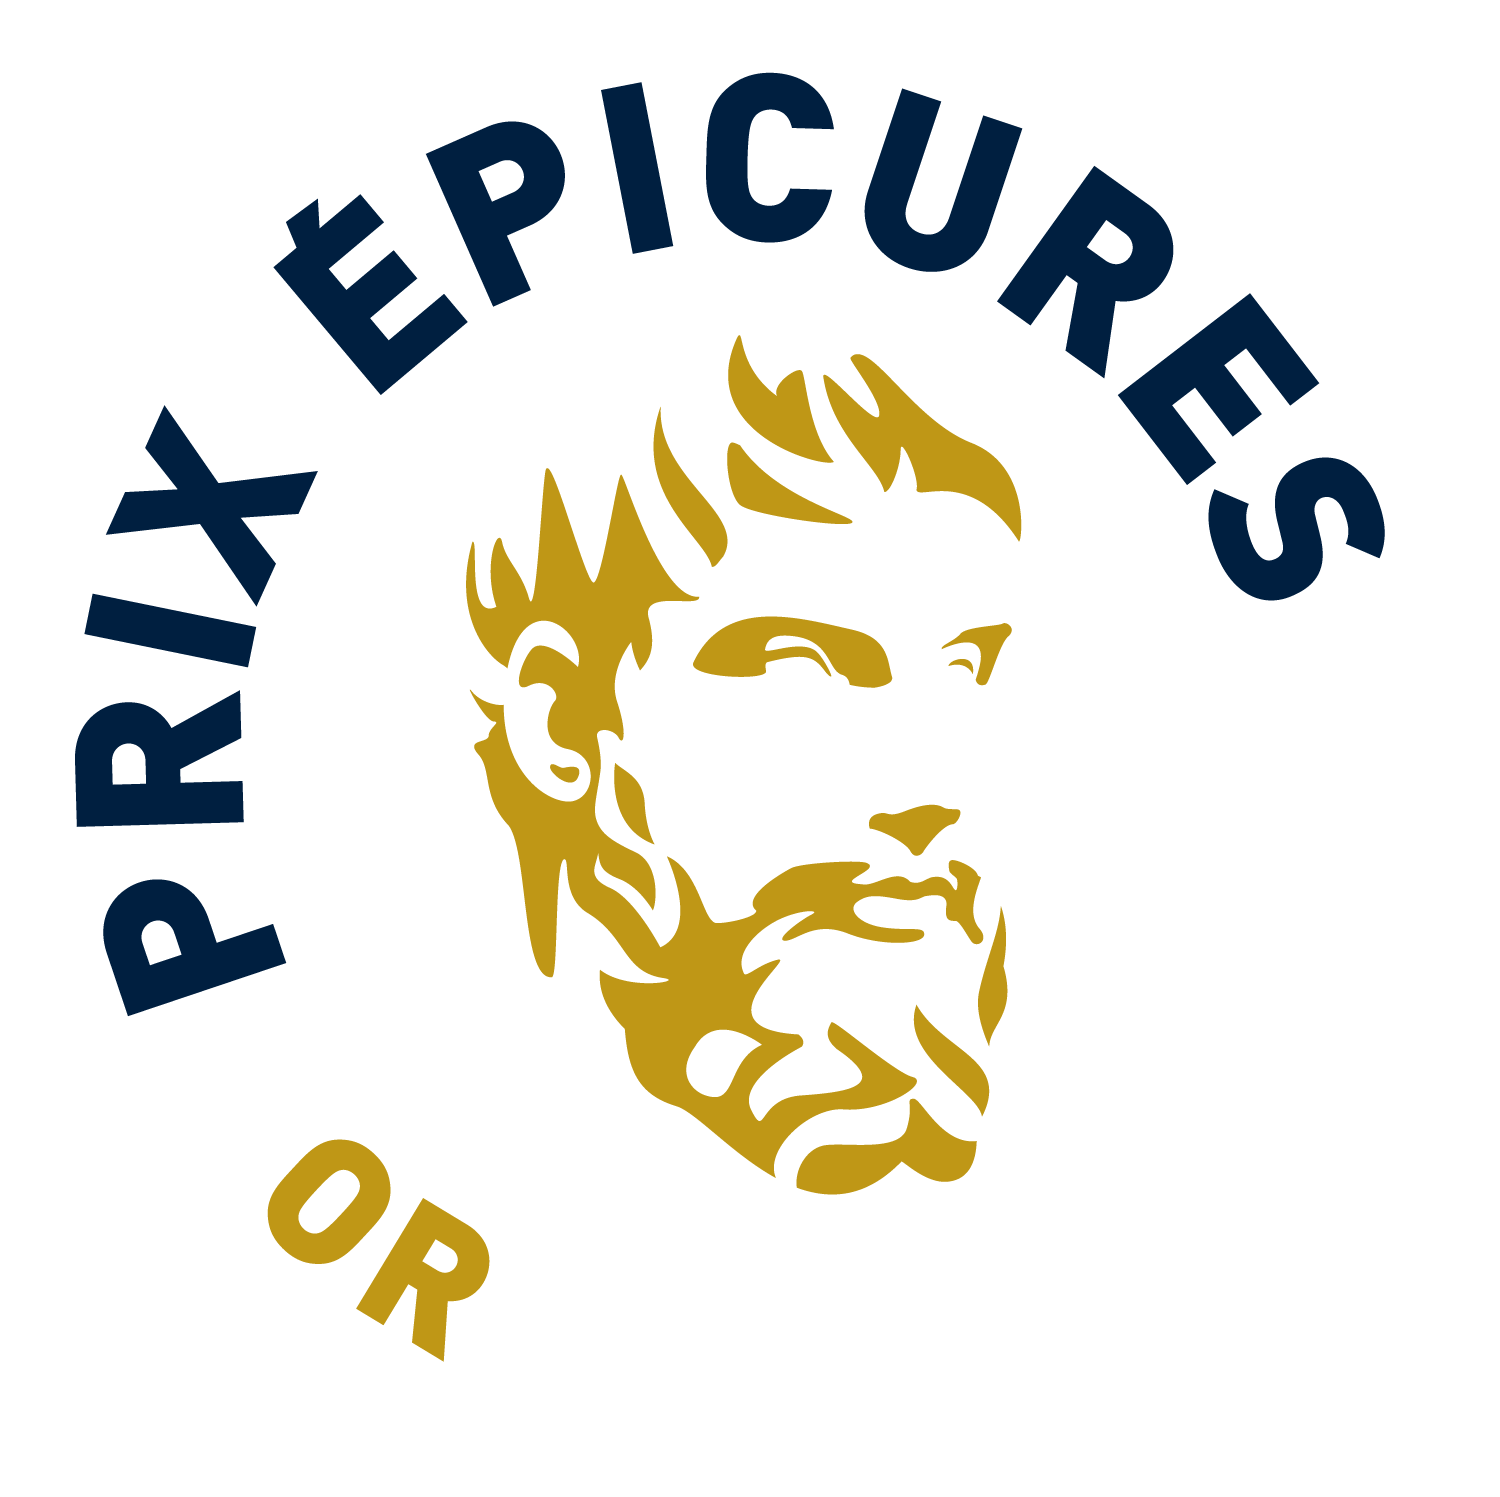 Prix Epicures or